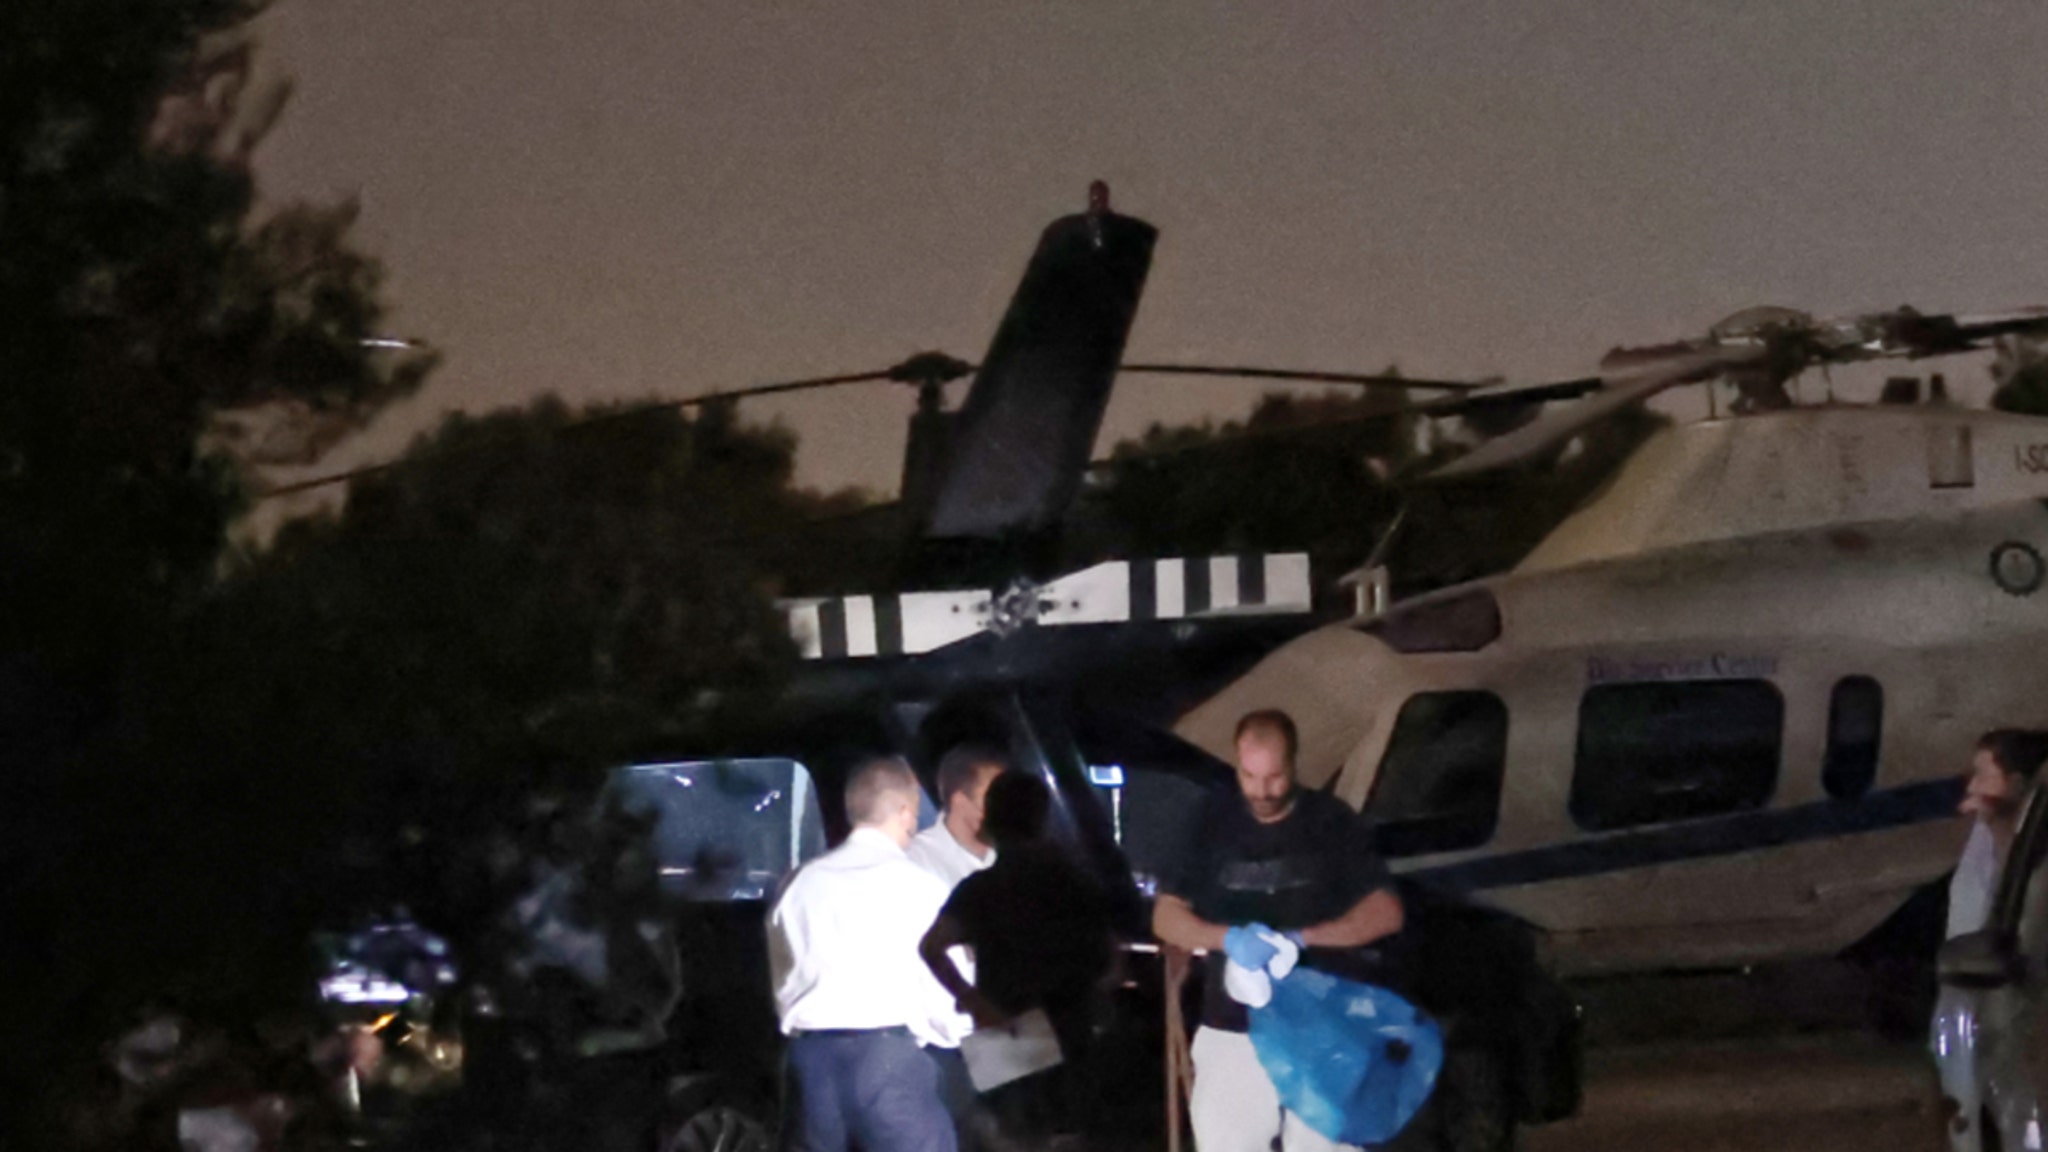 Mann stirbt zu Fuß in Hubschrauberklinge, Polizisten untersuchen Selfie als Ursache